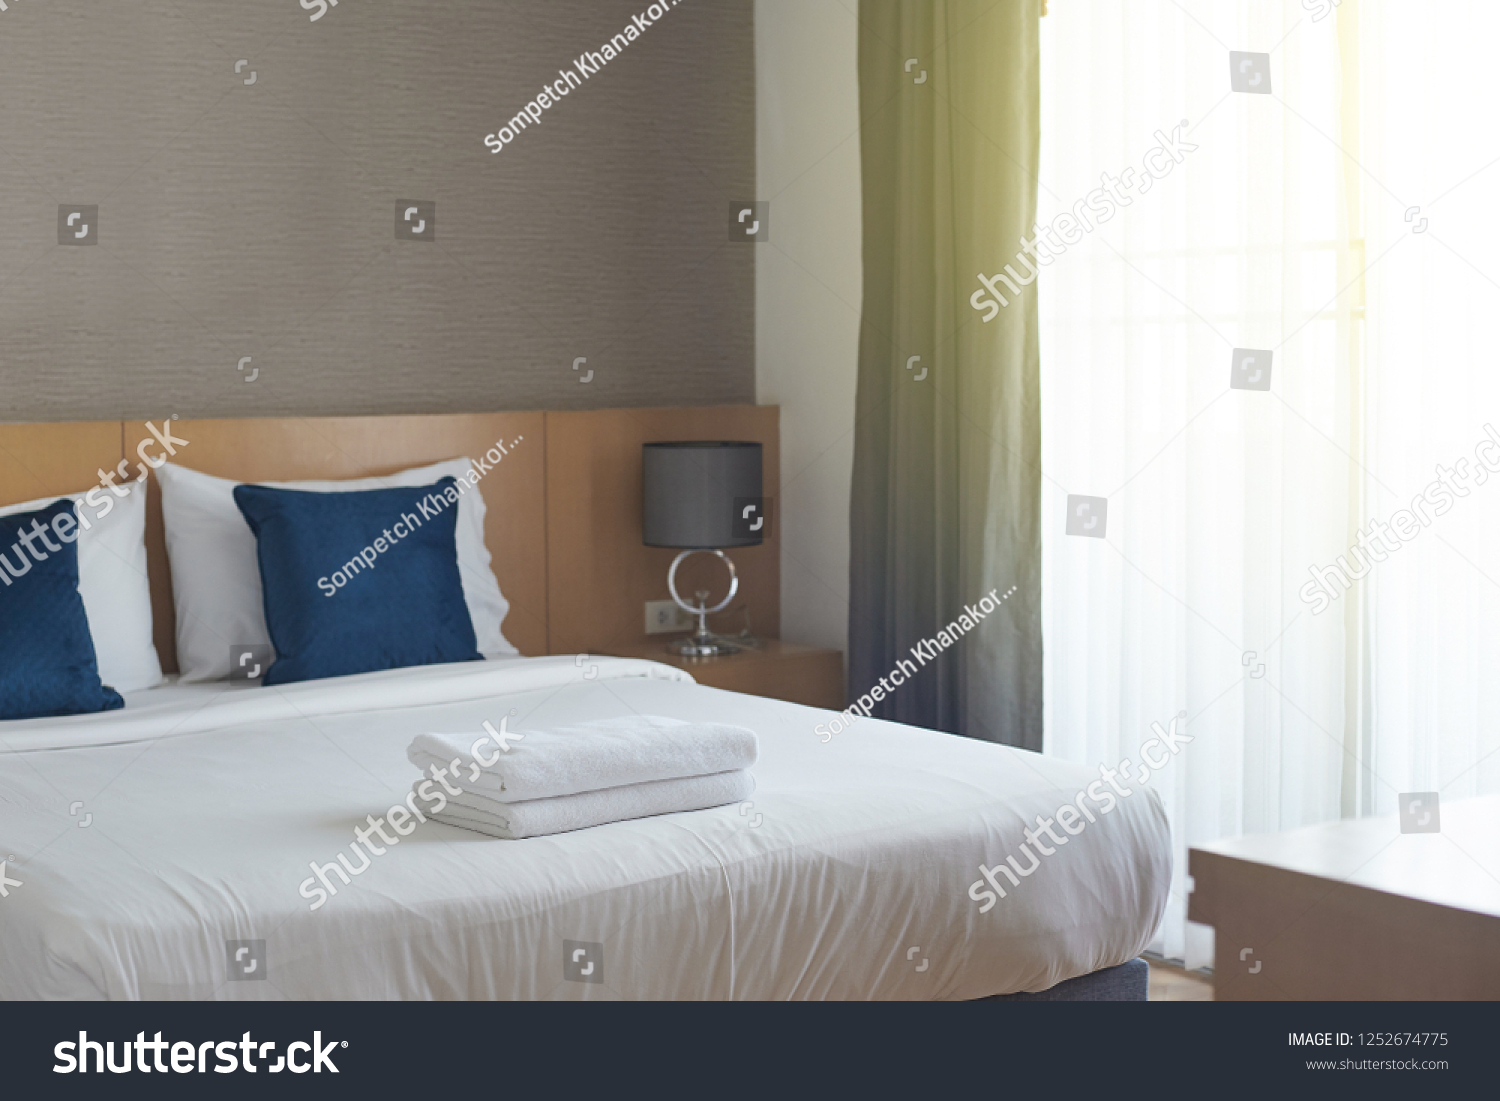 Hotel room , Condominium or apartment doorway with open door in front of blur bedroom background #1252674775